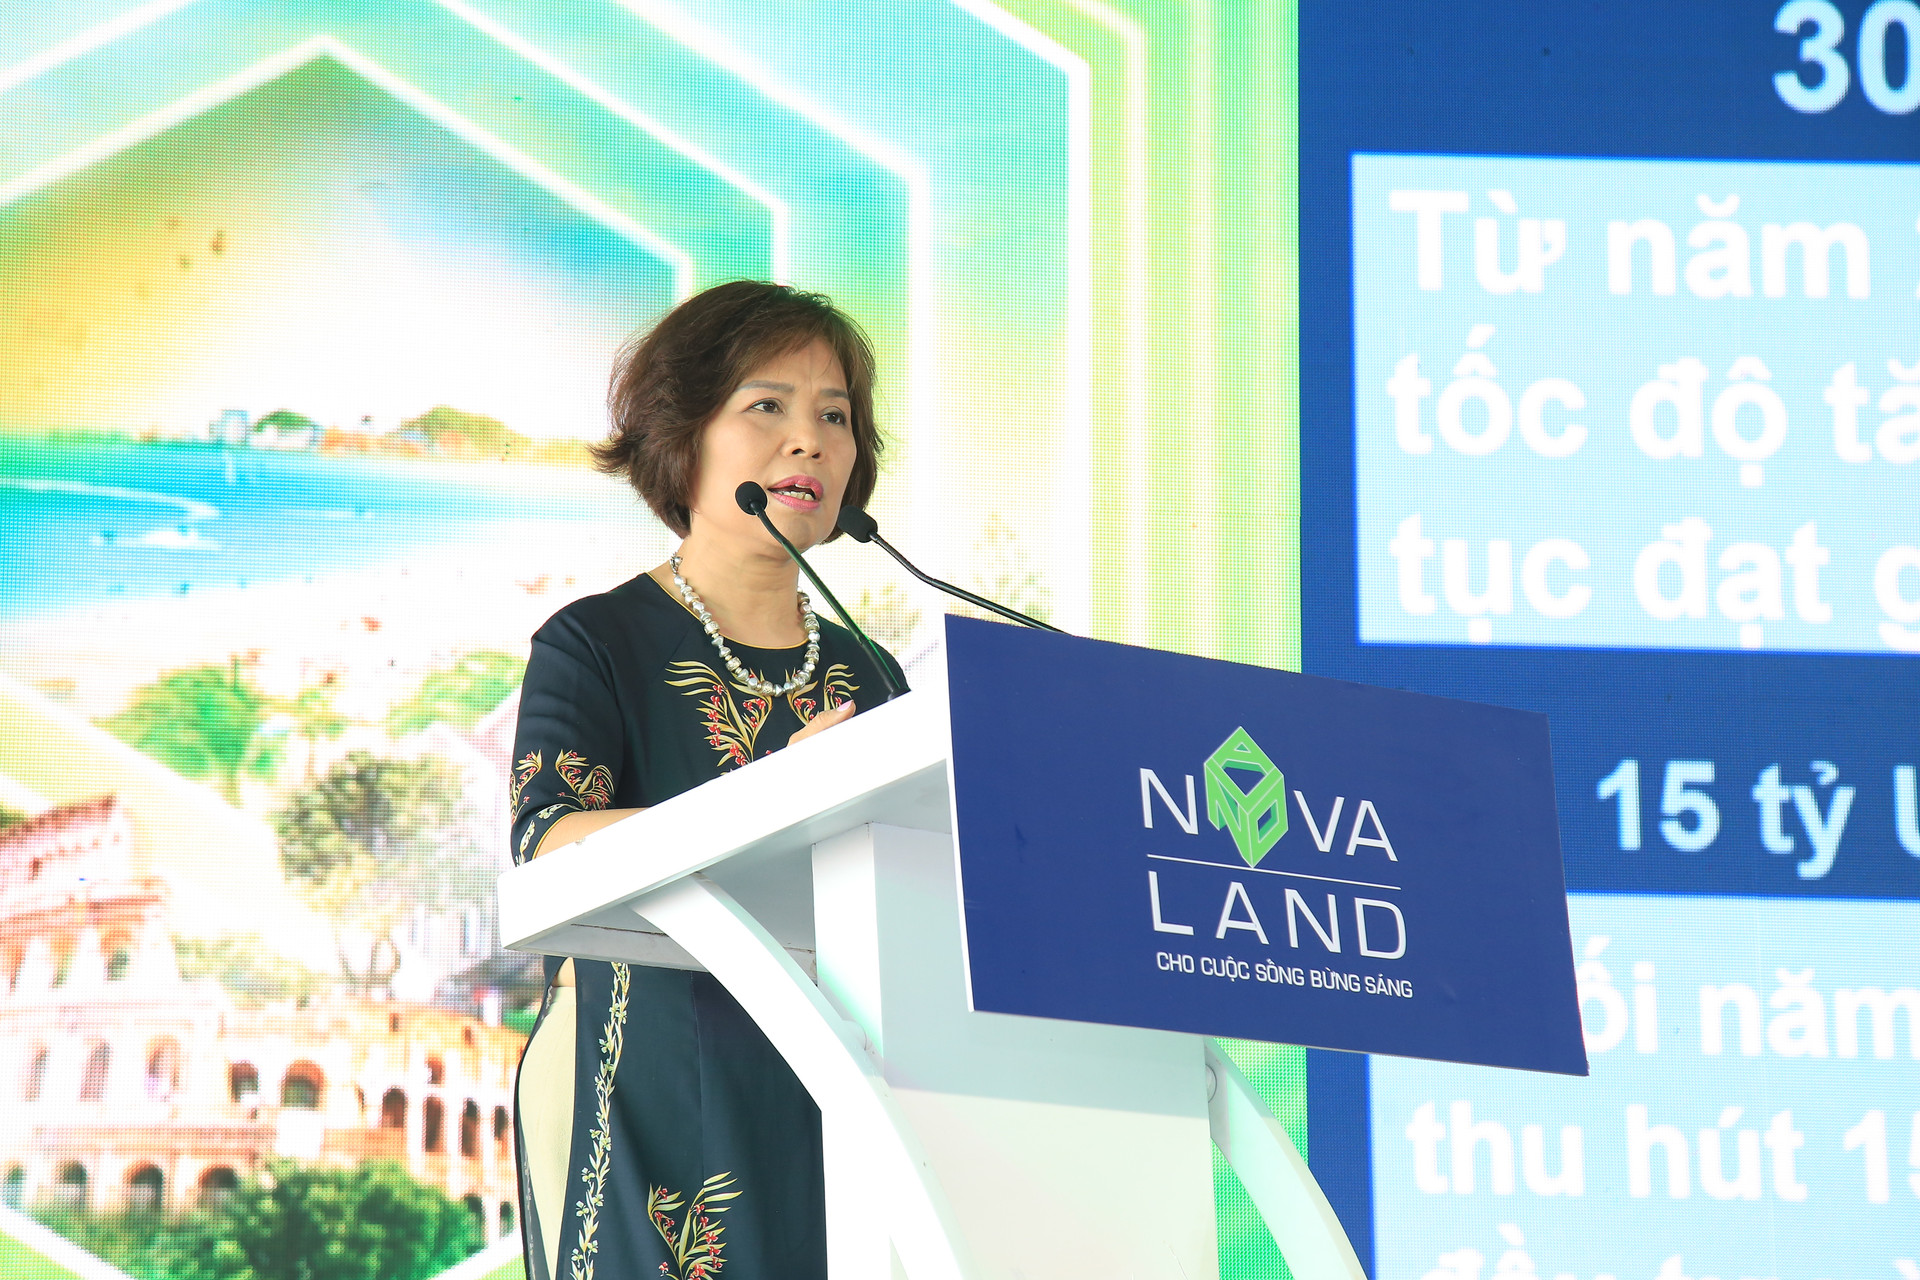 Mô hình bất động sản nào thu hút khách nhiều nhất tại Novaland Expo 2019